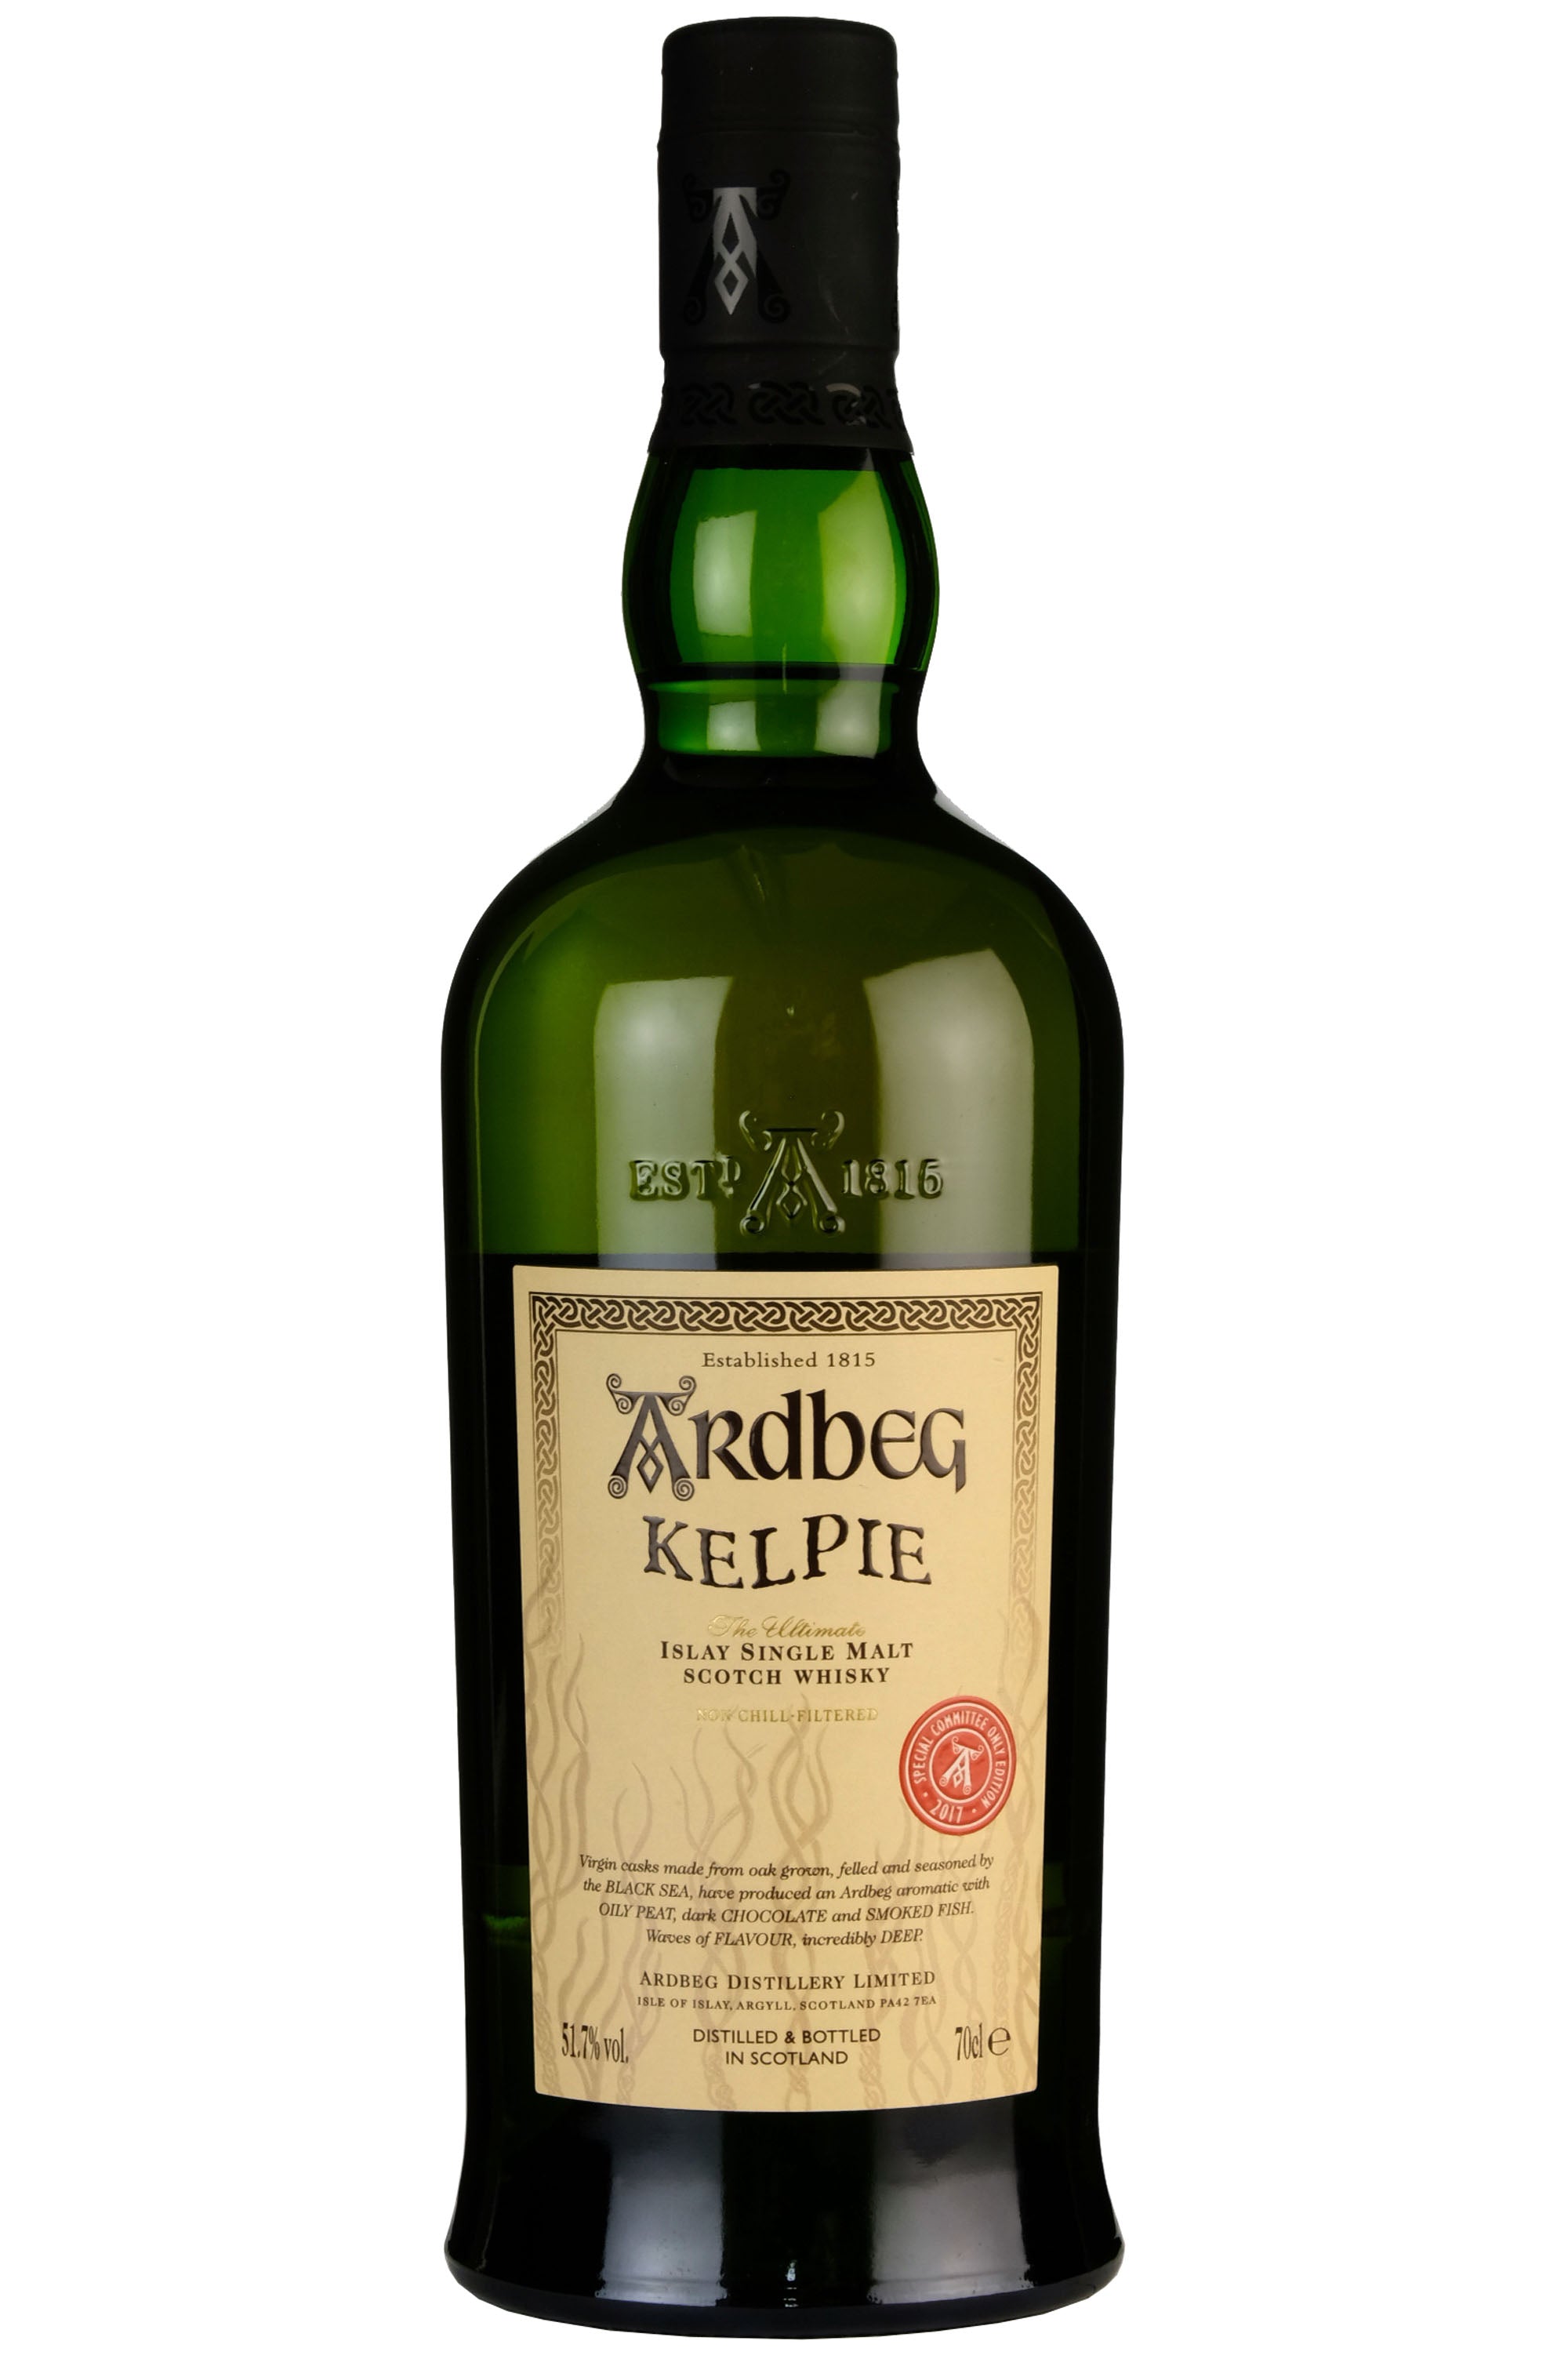 Ardbeg Kelpie Committee Only 2017 Release